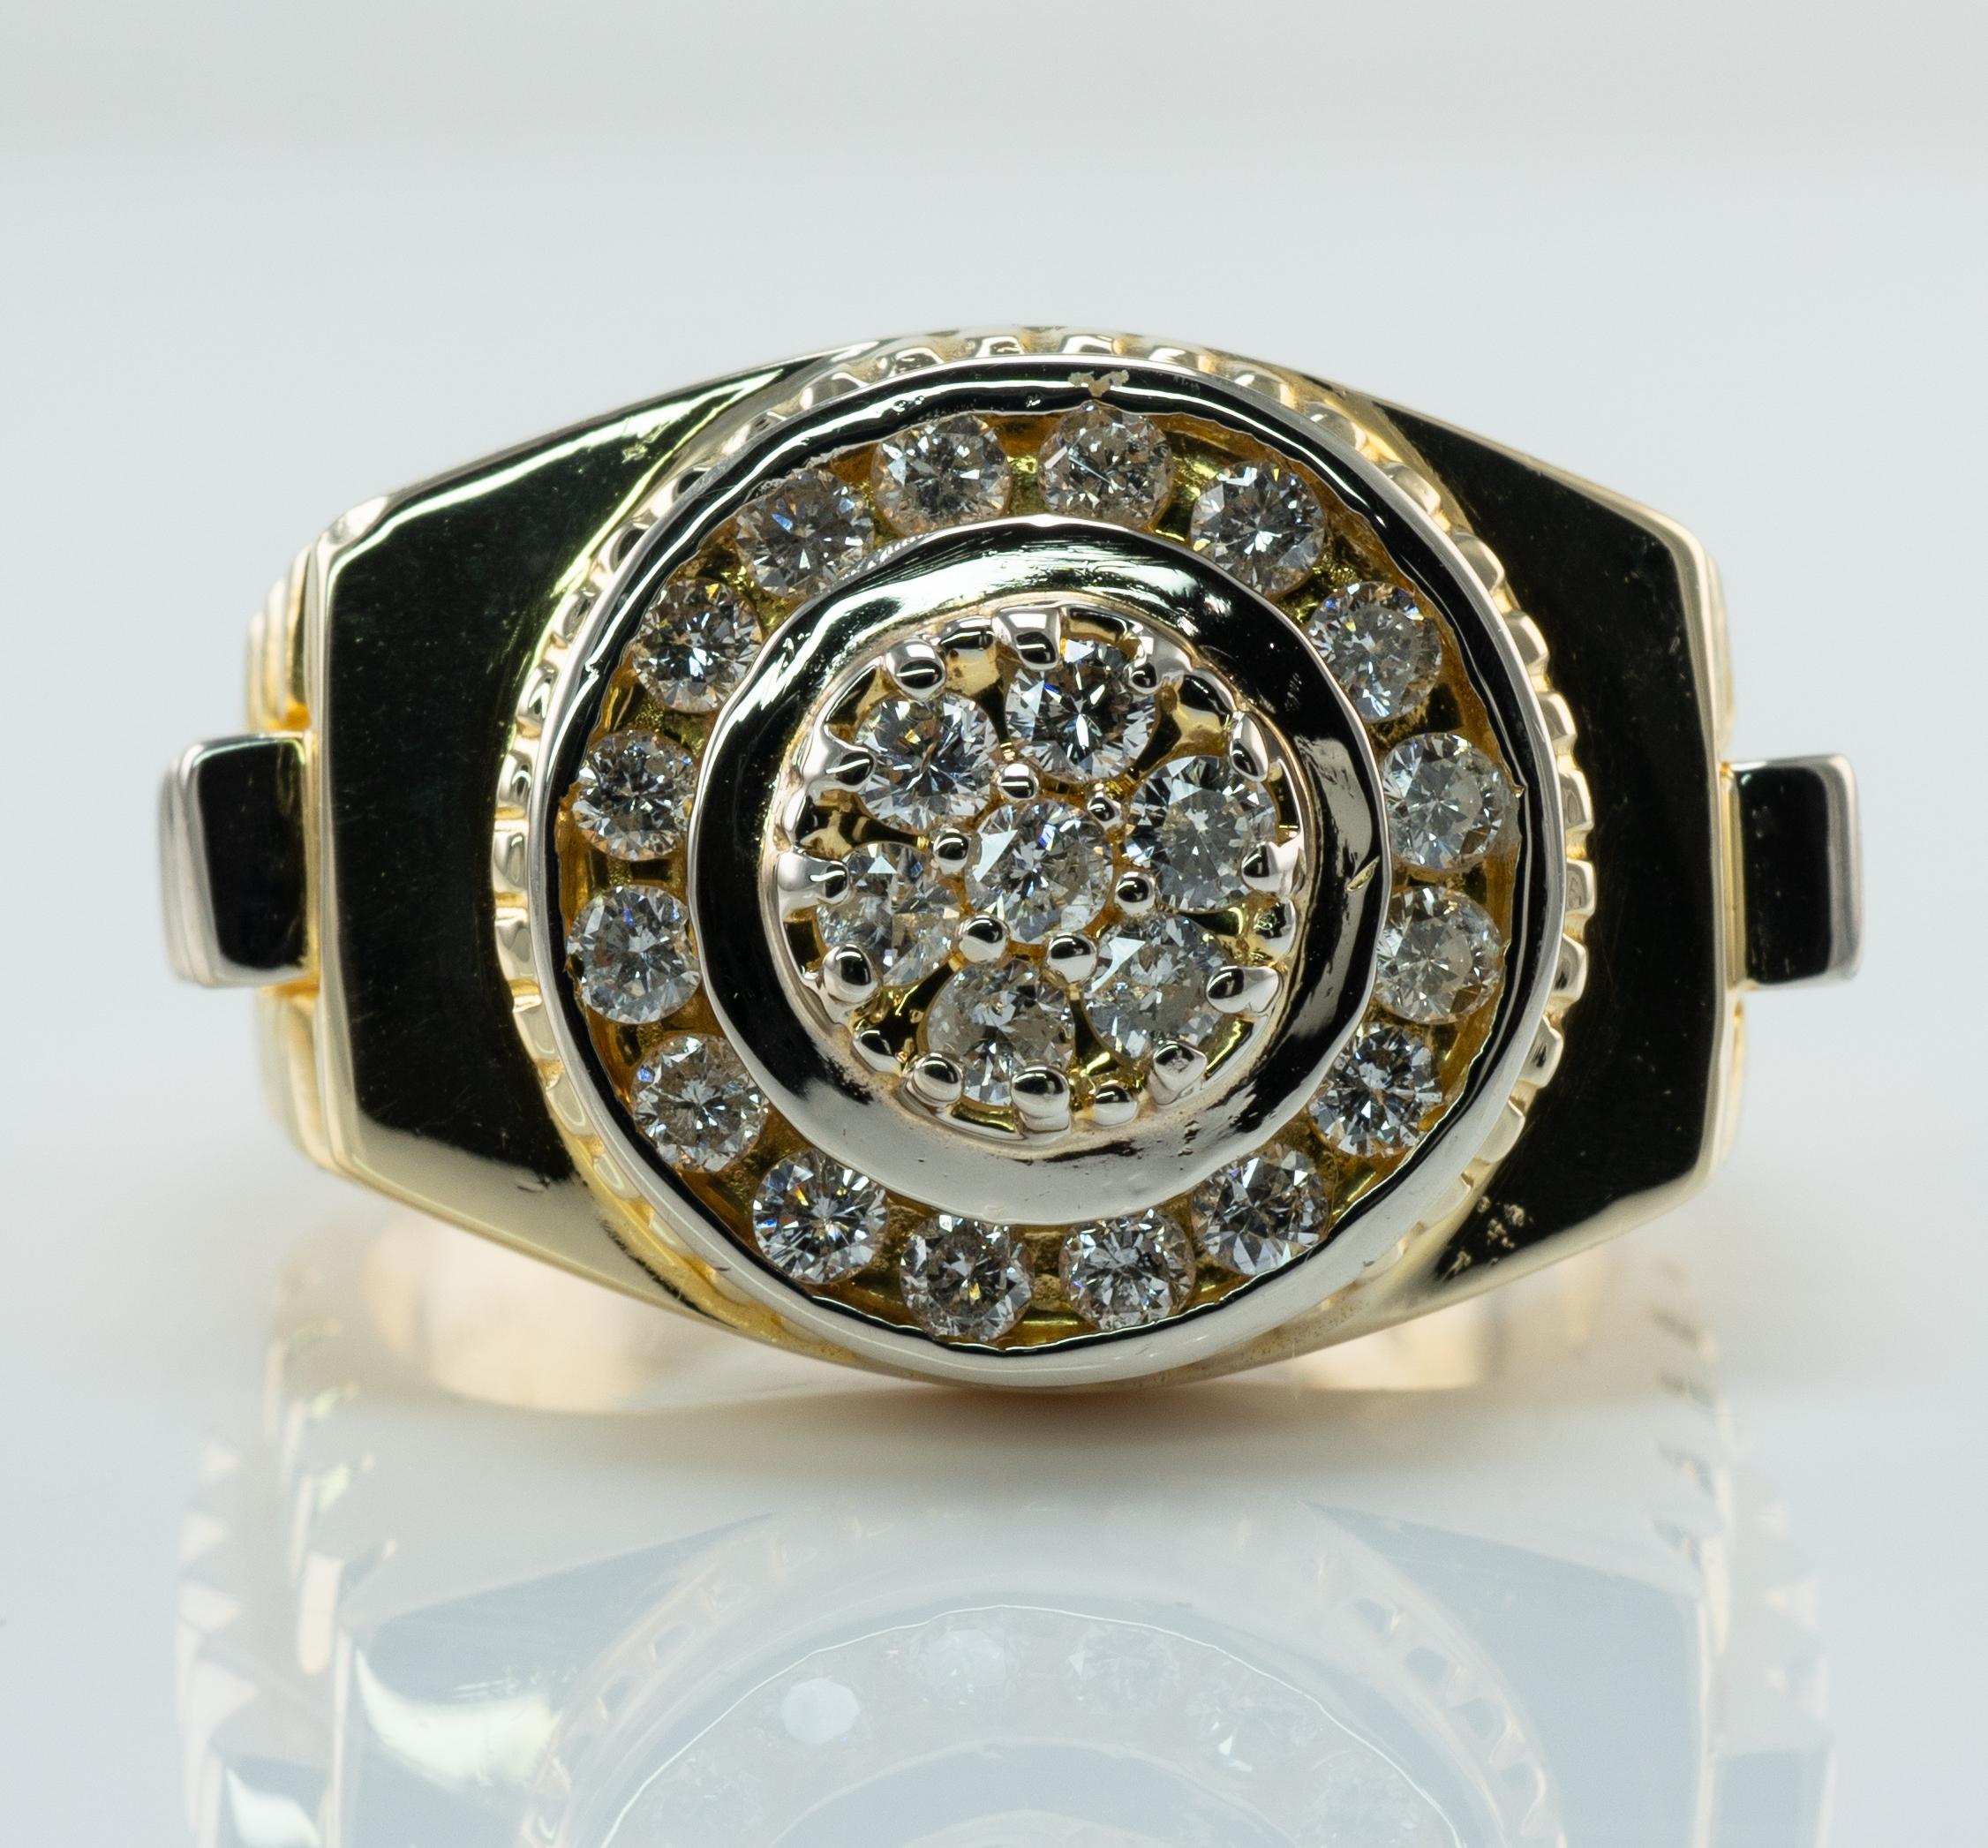 Herren Diamantring 14K Goldband 1,15 TDW Rolex-Stil

Diese erstaunliche Vintage-Ring für einen Gentleman ist fein in Handarbeit in massivem 14K Gelbgold mit Weißgold Akzente und mit weißen und feurigen runden Brillanten besetzt. 7 Diamanten in der